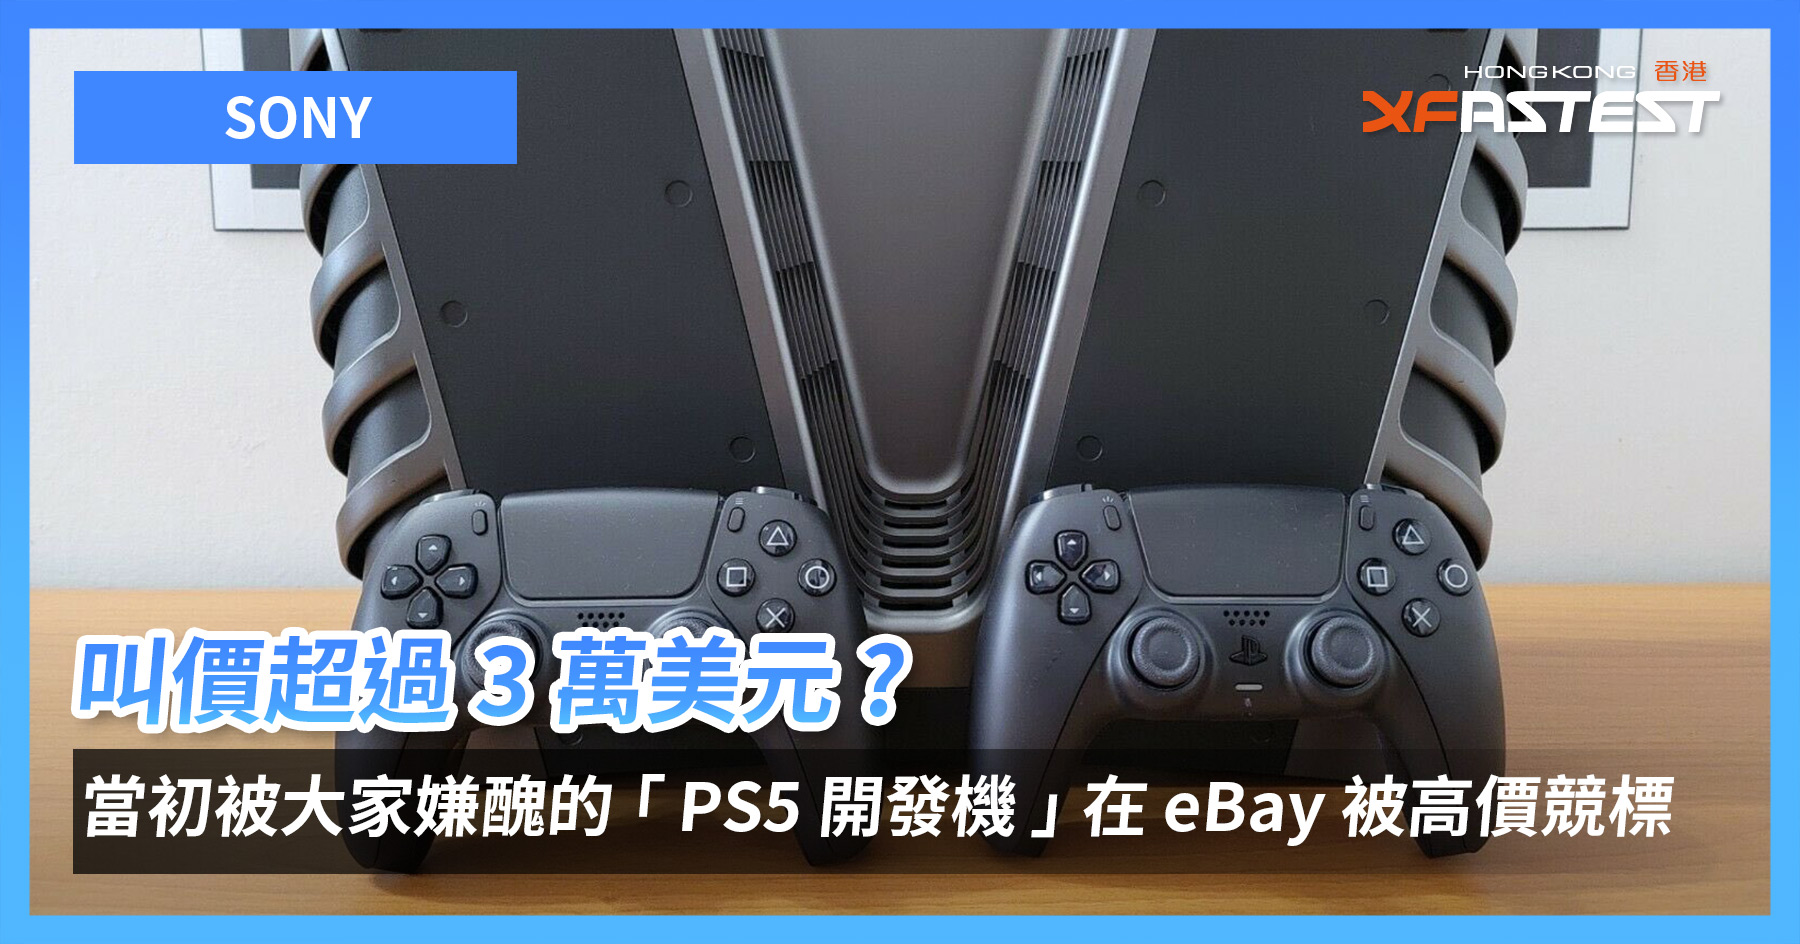 叫價超過3 萬美元? 當初被大家嫌醜的SONY PS5 開發機在eBay 被高價競標 